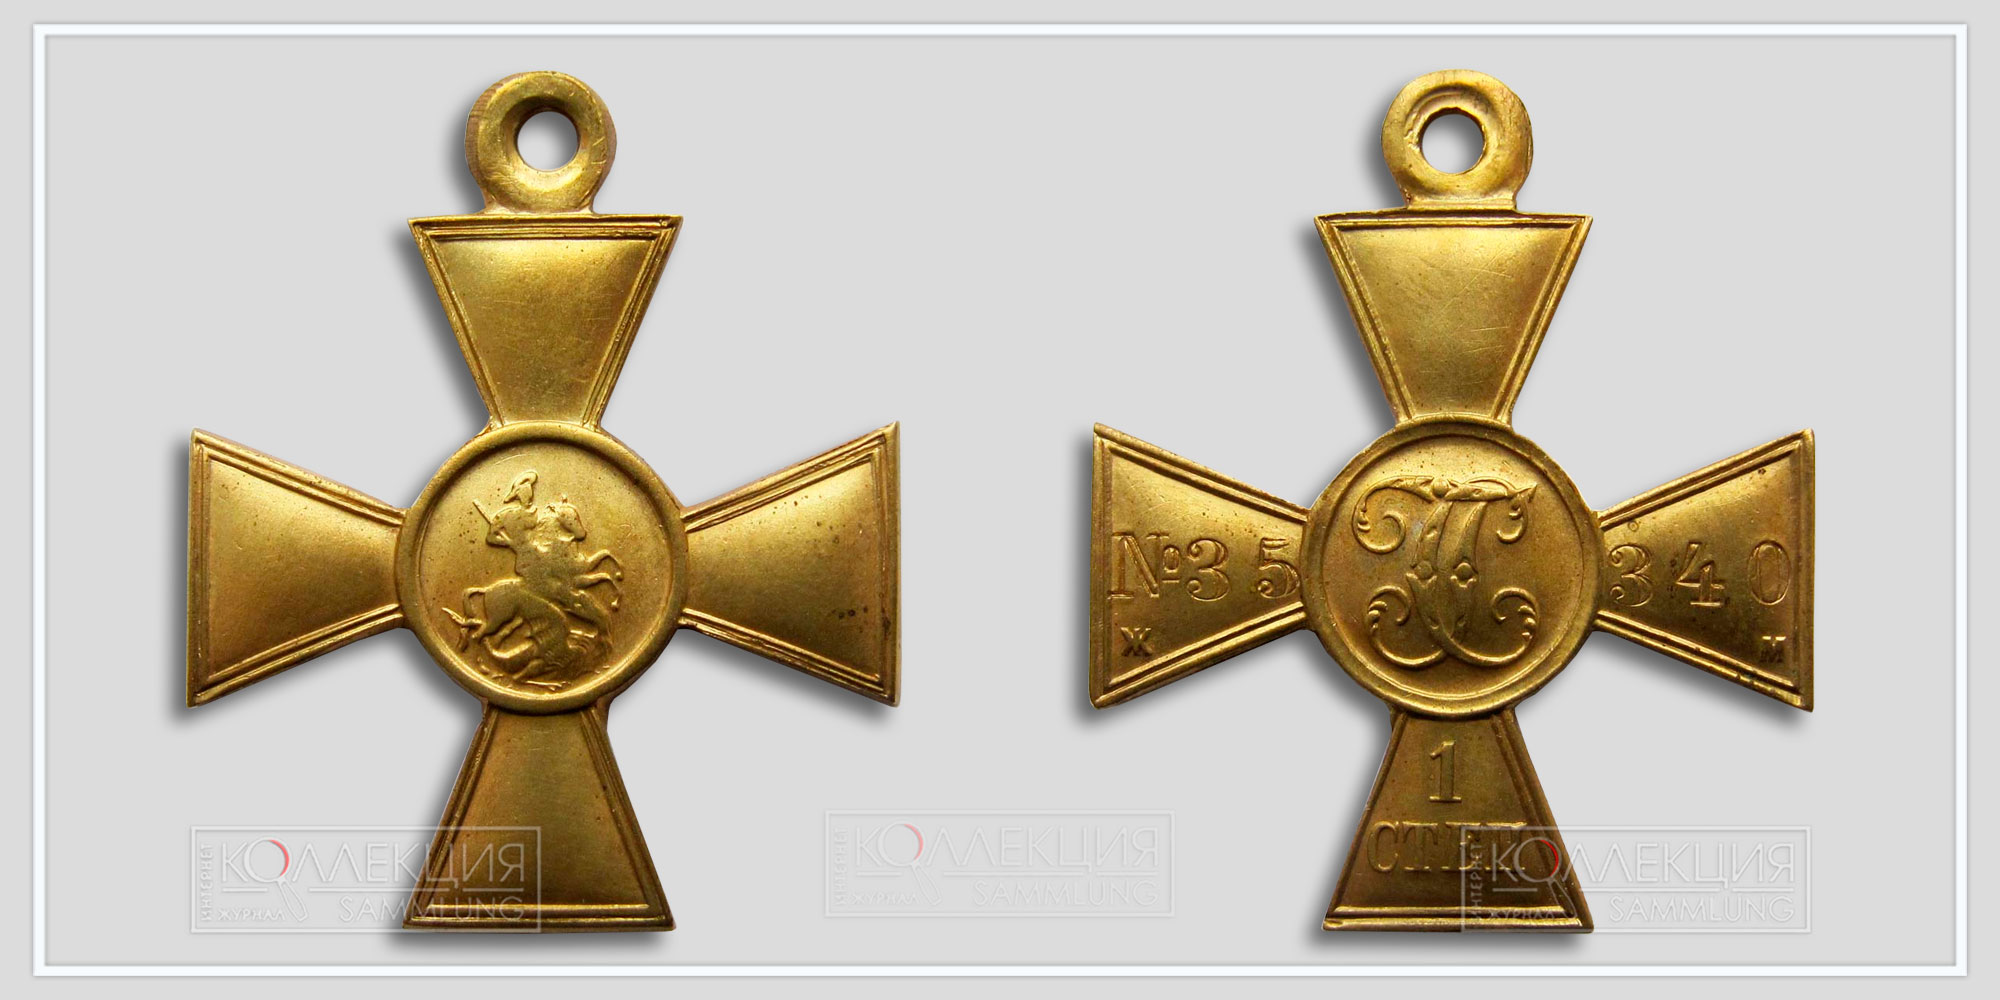 Георгиевский крест 1 ст. №35.340 (Ж.М. жёлтый металл) 